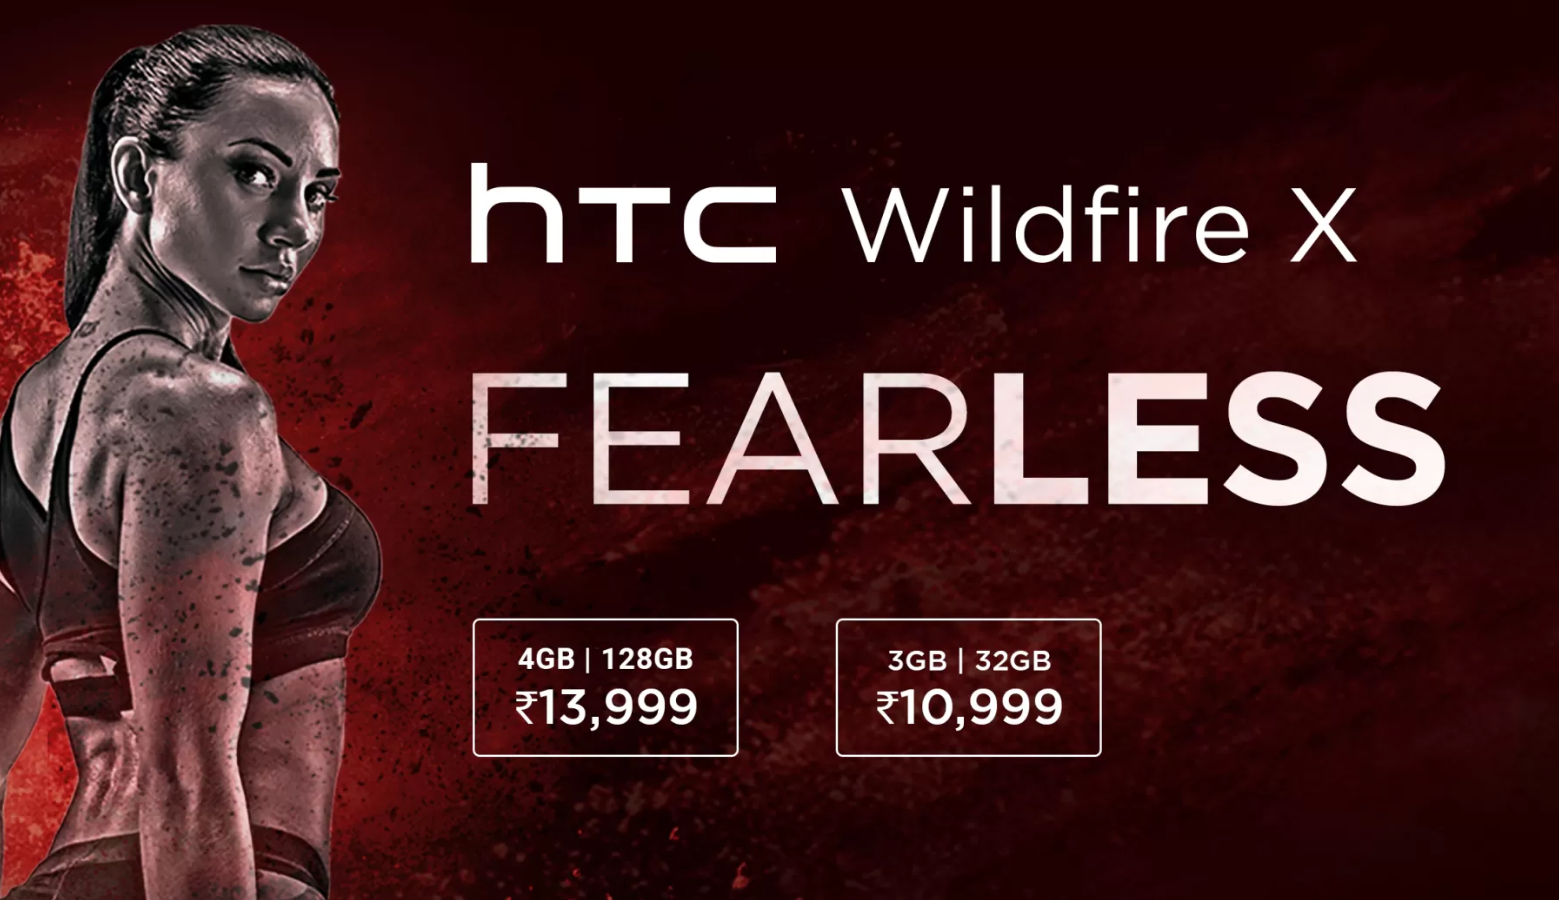 HTC Wildfire X lanzado en India